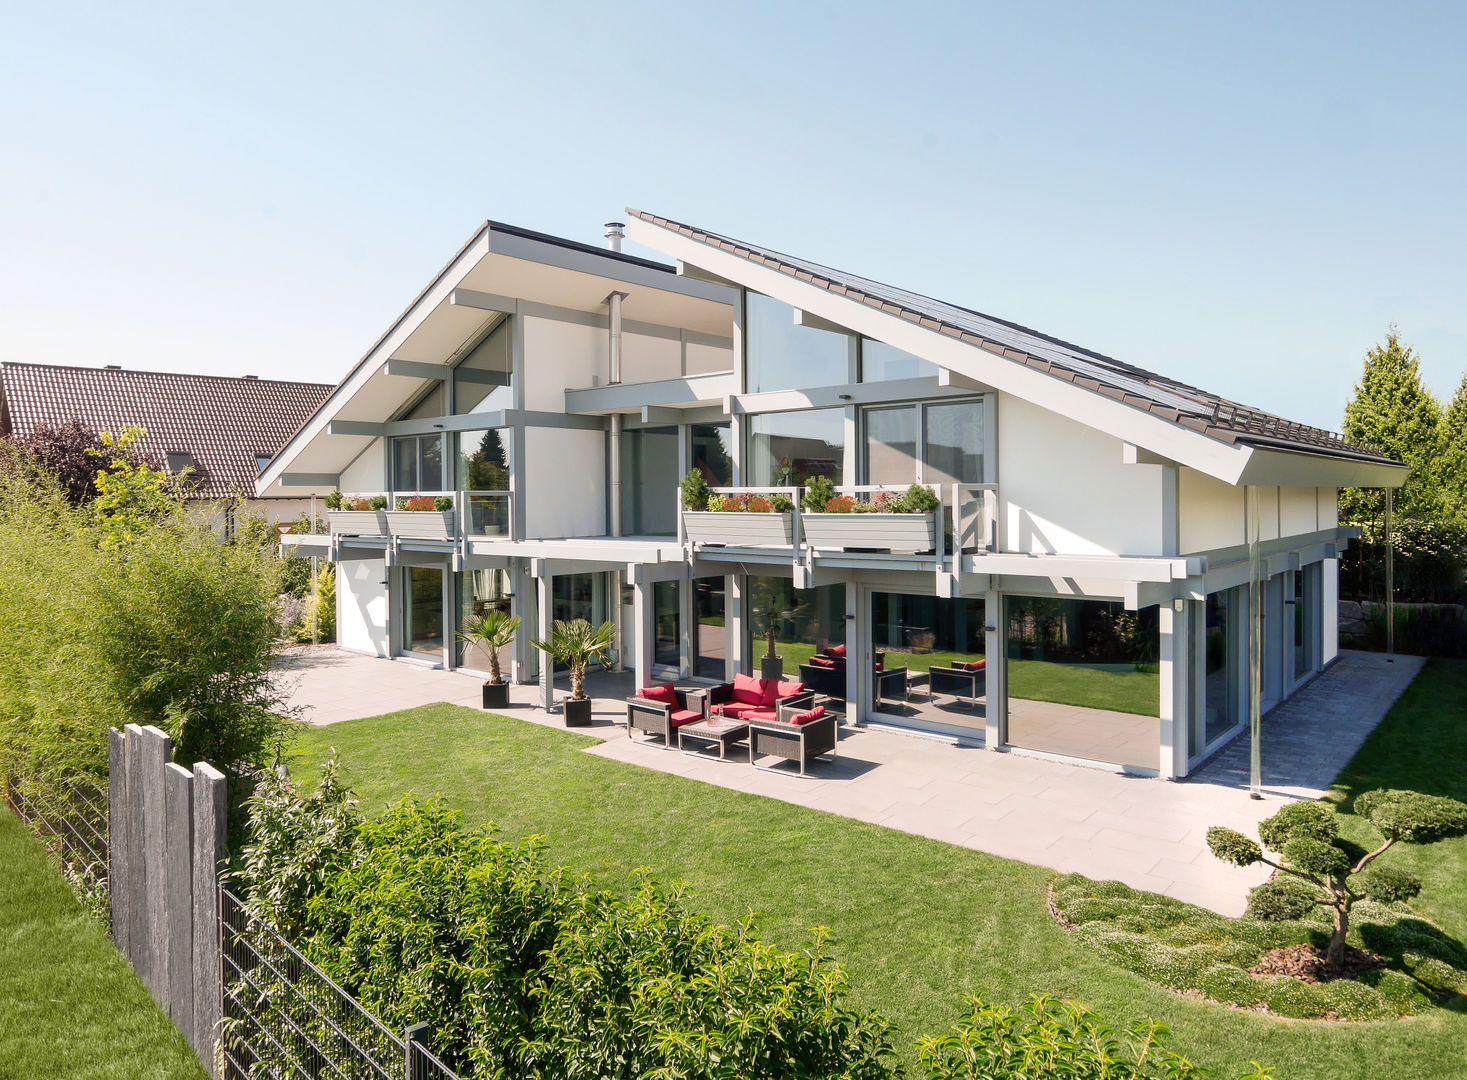 Kundenhaus Friedrichsen - Familienvilla mit Innen-Pool, DAVINCI HAUS GmbH & Co. KG DAVINCI HAUS GmbH & Co. KG 모던스타일 주택